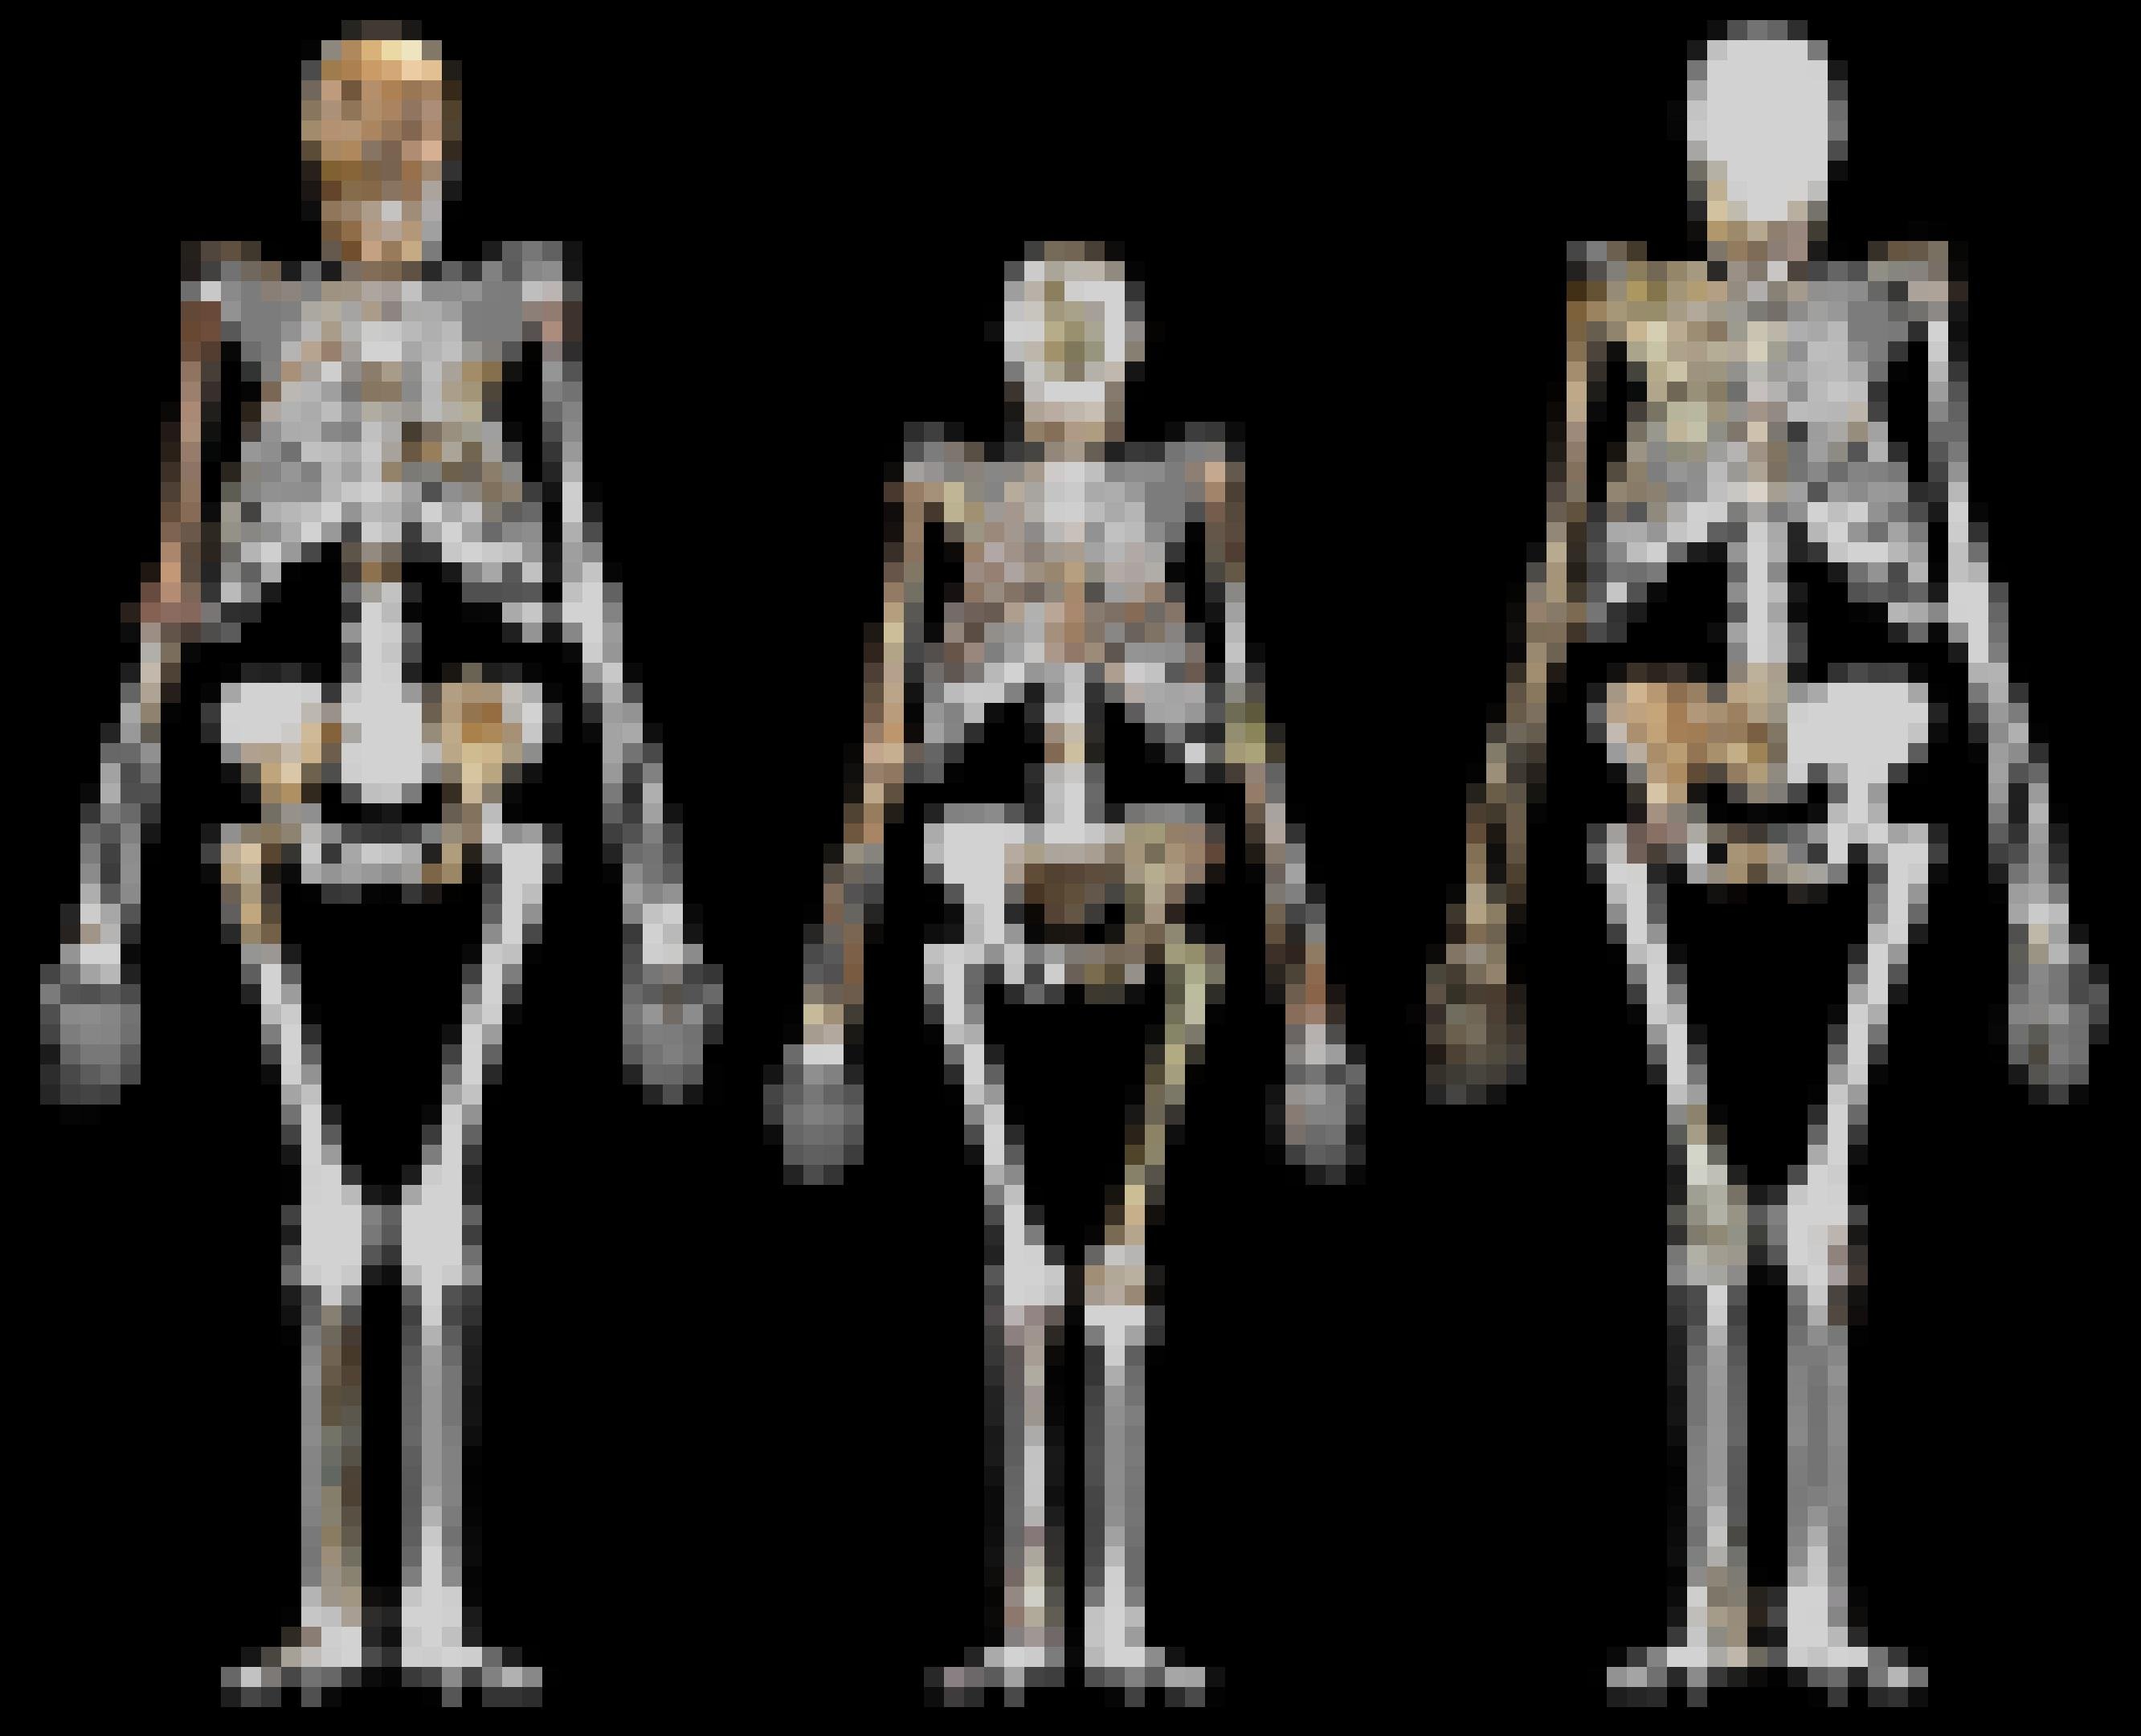 Dargestellt sind die rekonstruierten Umrisse von drei Skeletten, in die die fossilen Knochen von Vormenschen projiziert sind. In der Mitte wird der etwas kleinere Umriss von Lucy (Australopithecus afarensis) gezeigt, links und rechts daneben jeweils ein Exemplar der Art Australopithecus sediba aus Südafrika. Die breiten Becken, „X-Beine“ und nach vorne schauenden Schädel zeigen eindeutig, dass diese Wesen eine aufrechte Körperhaltung hatten.